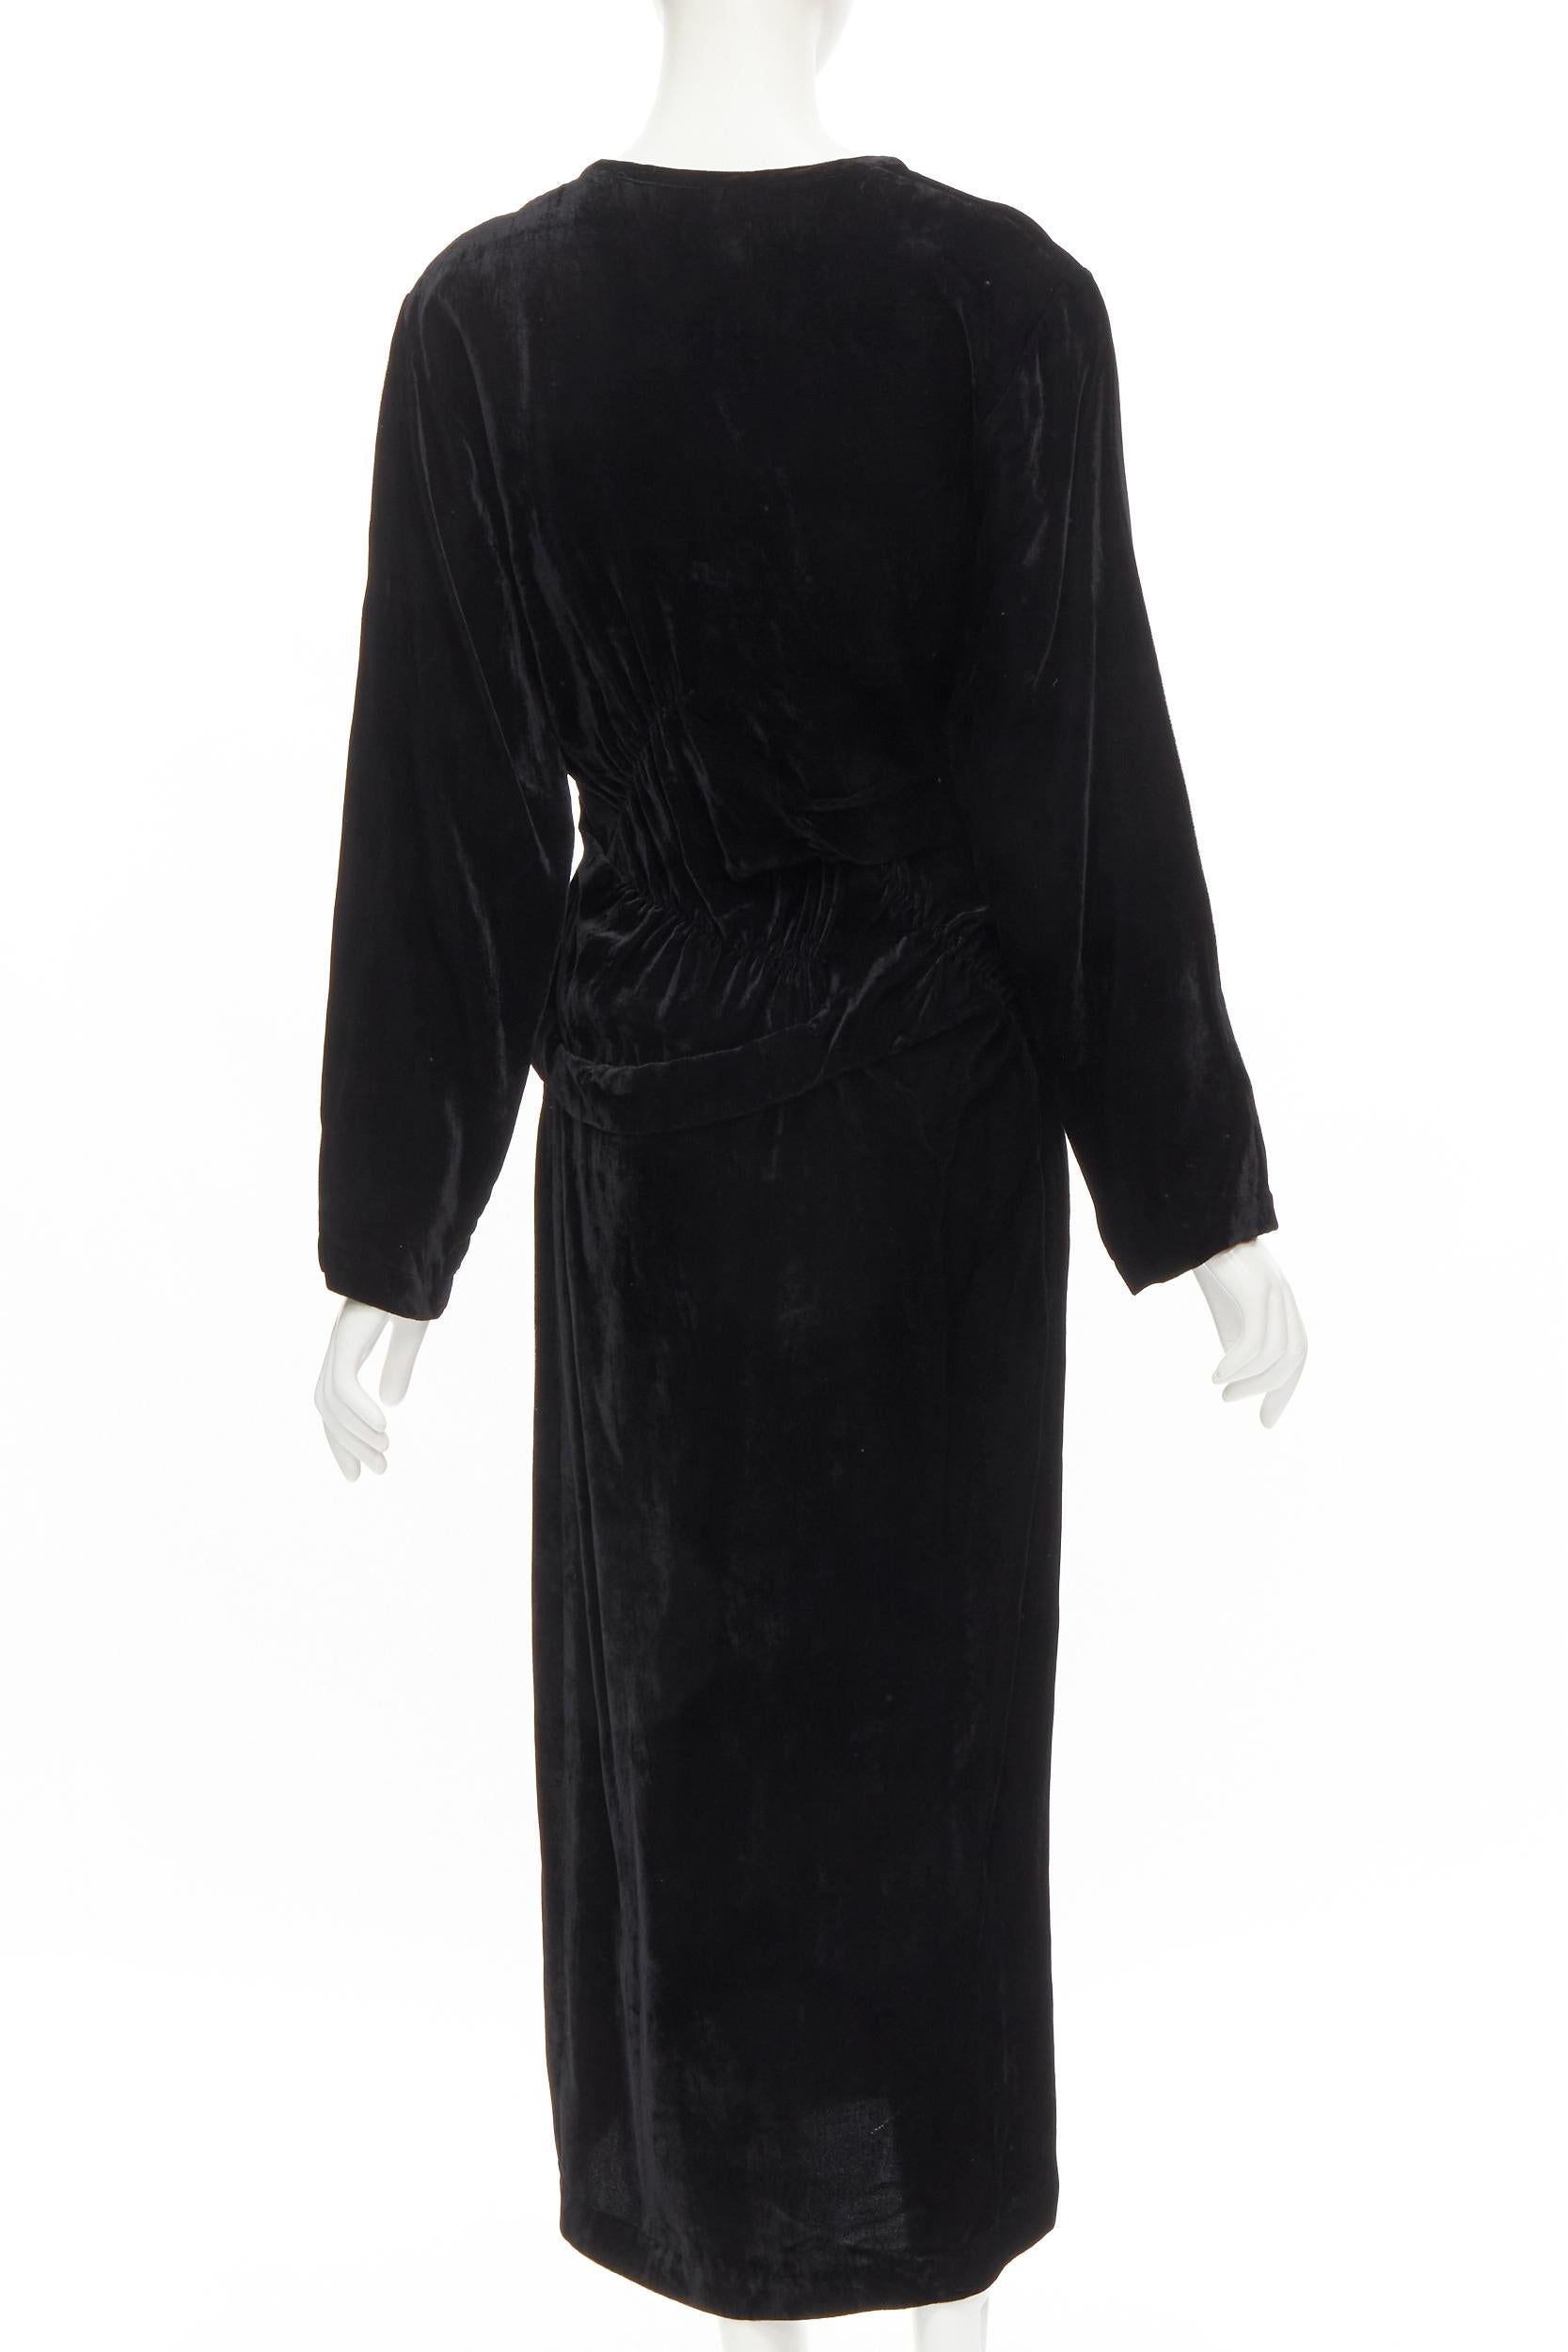 COMME DES GARCONS Robe midi vintage à carreaux irréguliers en velours noir, Taille M, années 1980 Pour femmes en vente